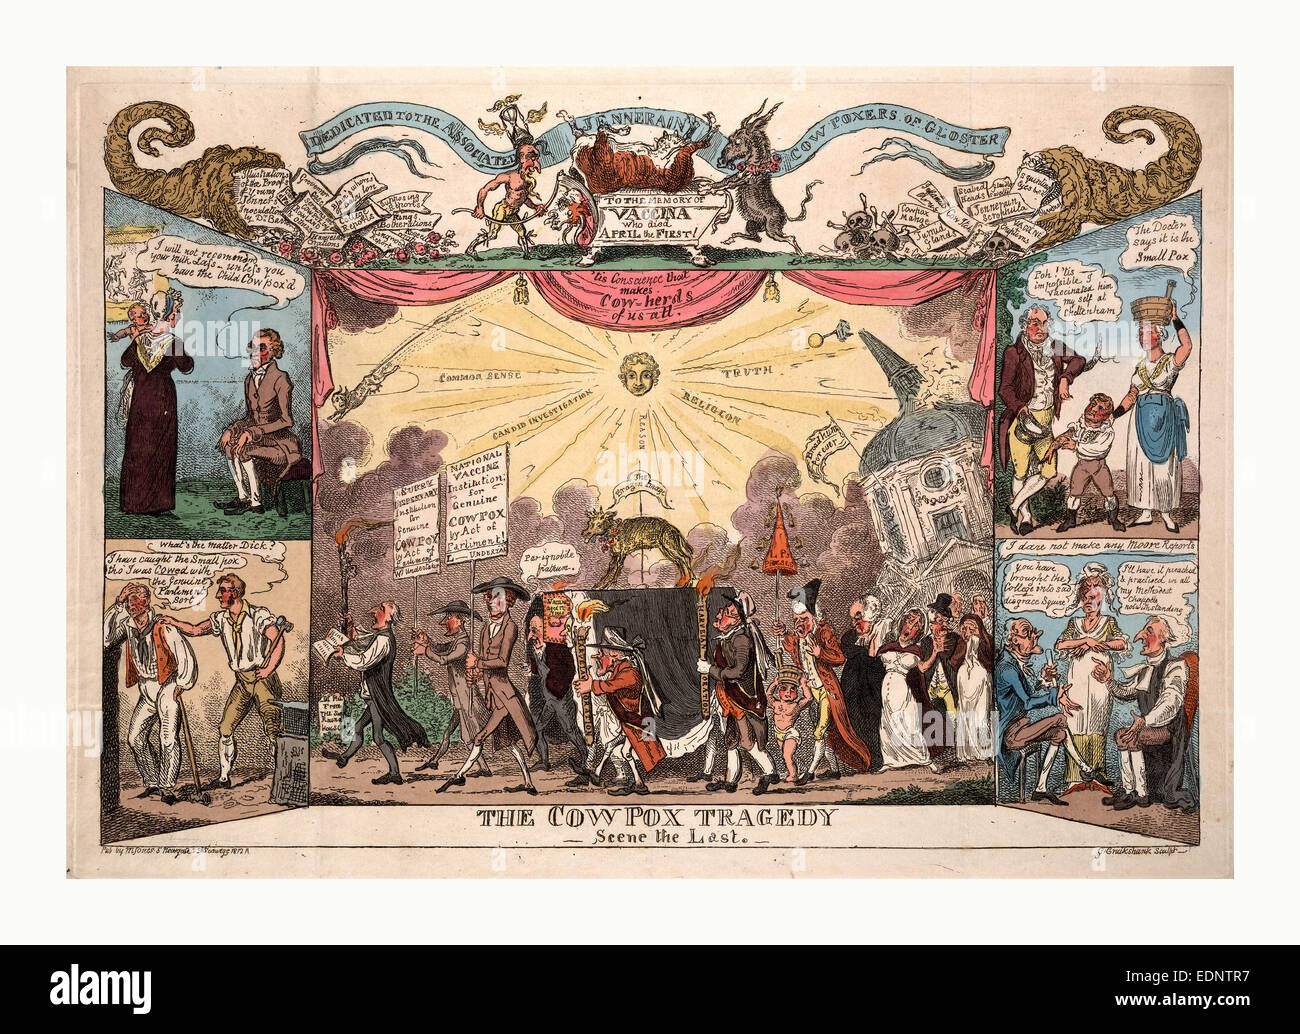 La tragedia cowpox, scena l'ultimo, Cruikshank, George, 1792-1878, artista, London, 1812, il corteo funebre che mostra etichetta del feretro Foto Stock